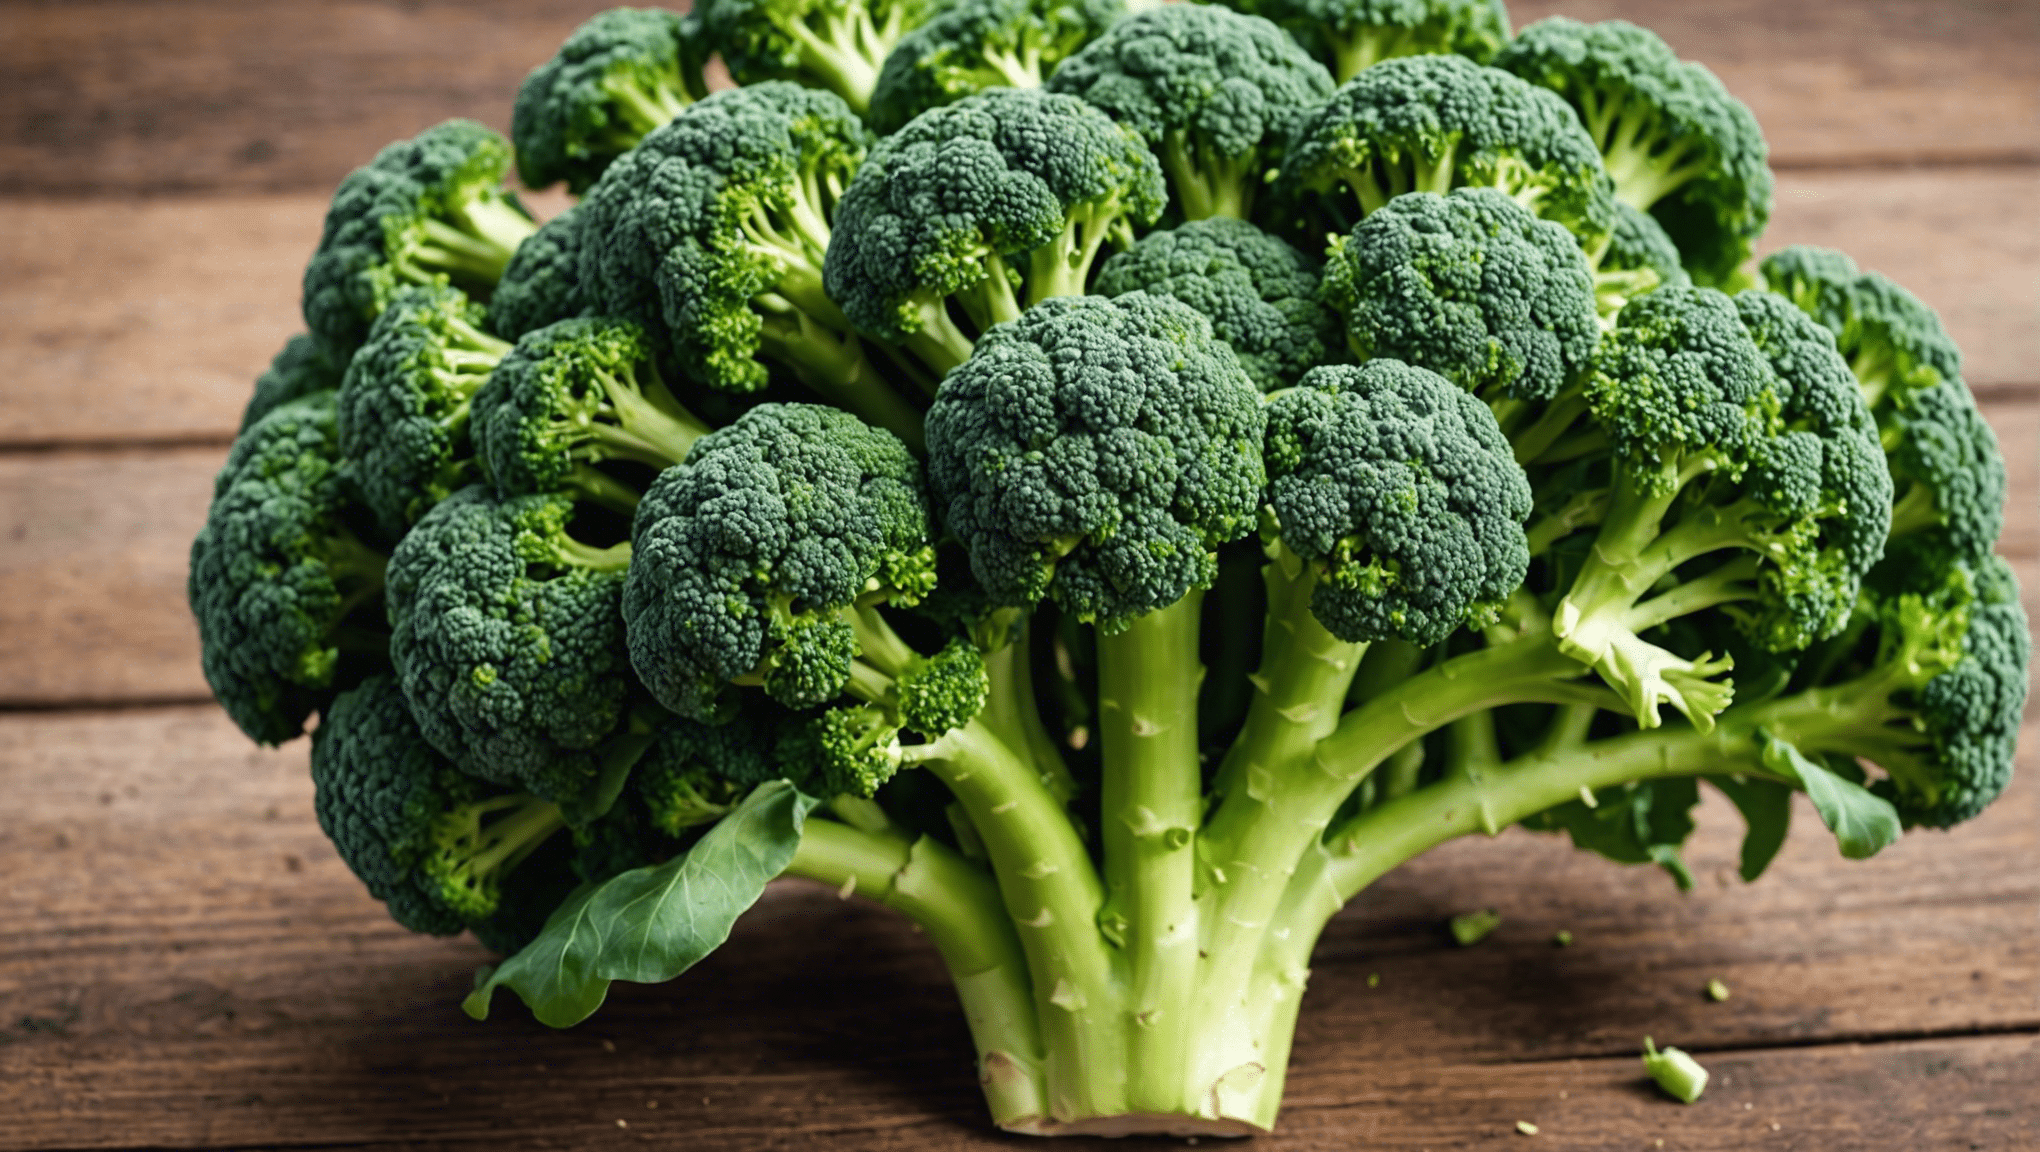 objavte dôvody popularity brokolicových semienok v zdravotných trendoch a ich potenciálne prínosy pre zdravie.